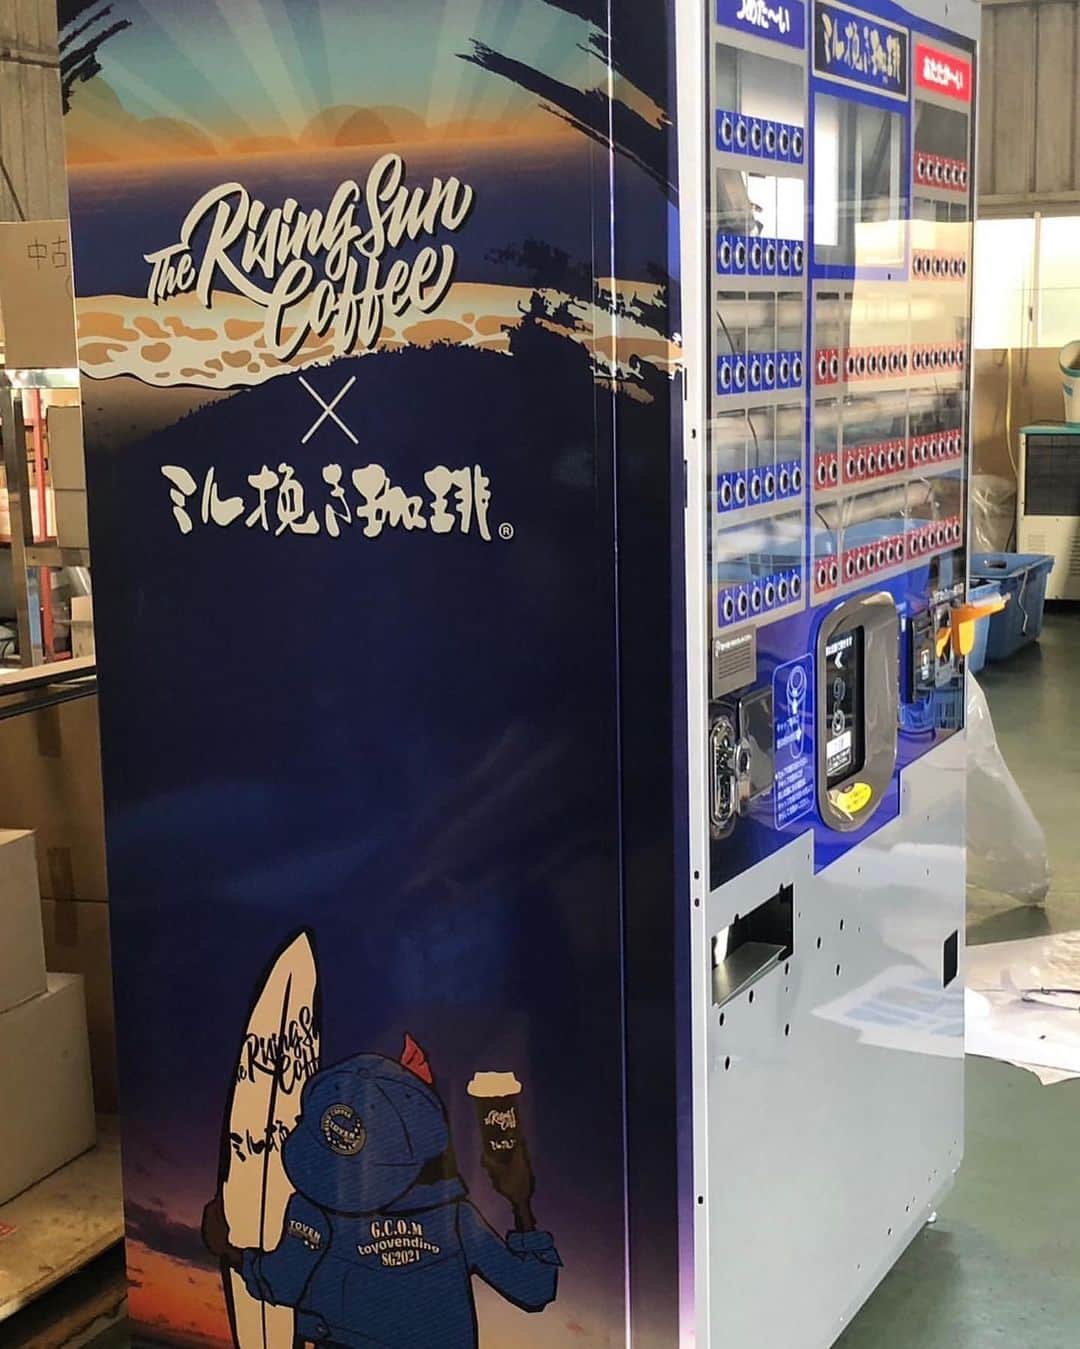 坂口憲二（THE RISING SUN COFFEE）のインスタグラム：「◆GOOD MORNING COFFEE‼︎◆  【SCAJ 2023】  今週の水曜日〜金曜日、東京ビックサイトにてアジア最大のコーヒーの祭典SCAJが開催されます！  TRSCもトーヨーベンディング @toyovending.official さんと共同で全自動販売機を展示します。SCAJ仕様のラッピング販売機に、素晴らしいコーヒーも用意してますので、ぜひブースに遊びに来て下さい。  【WE ARE OPEN】  本日も皆さまのご来店をお待ちしてます！  都内店舗 10:00〜17:00(無休)  大網店舗 11:00〜18:00(月火水木金) 　　　　10:00〜18:00(土日祝)  鶴見店舗 10:00〜18:00(無休)  therisingsuncoffee.com  #coffee #coffeebeans  #coffeeroaster  #coffeelab  #coffeeandsurfing  #coffeetime  #coffeelover  #coffeebreak  #coffeeshop  #coffeestand  #coffeeholic  #coffeehouse  #coffee_inst  #coffeemaker  #coffeeshops  #coffeecoffeecoffee  #coffeenclothes  #coffeeaddict  #coffeeculture  #coffeemorning  #coffeemag #scaj2023 #TRSC」